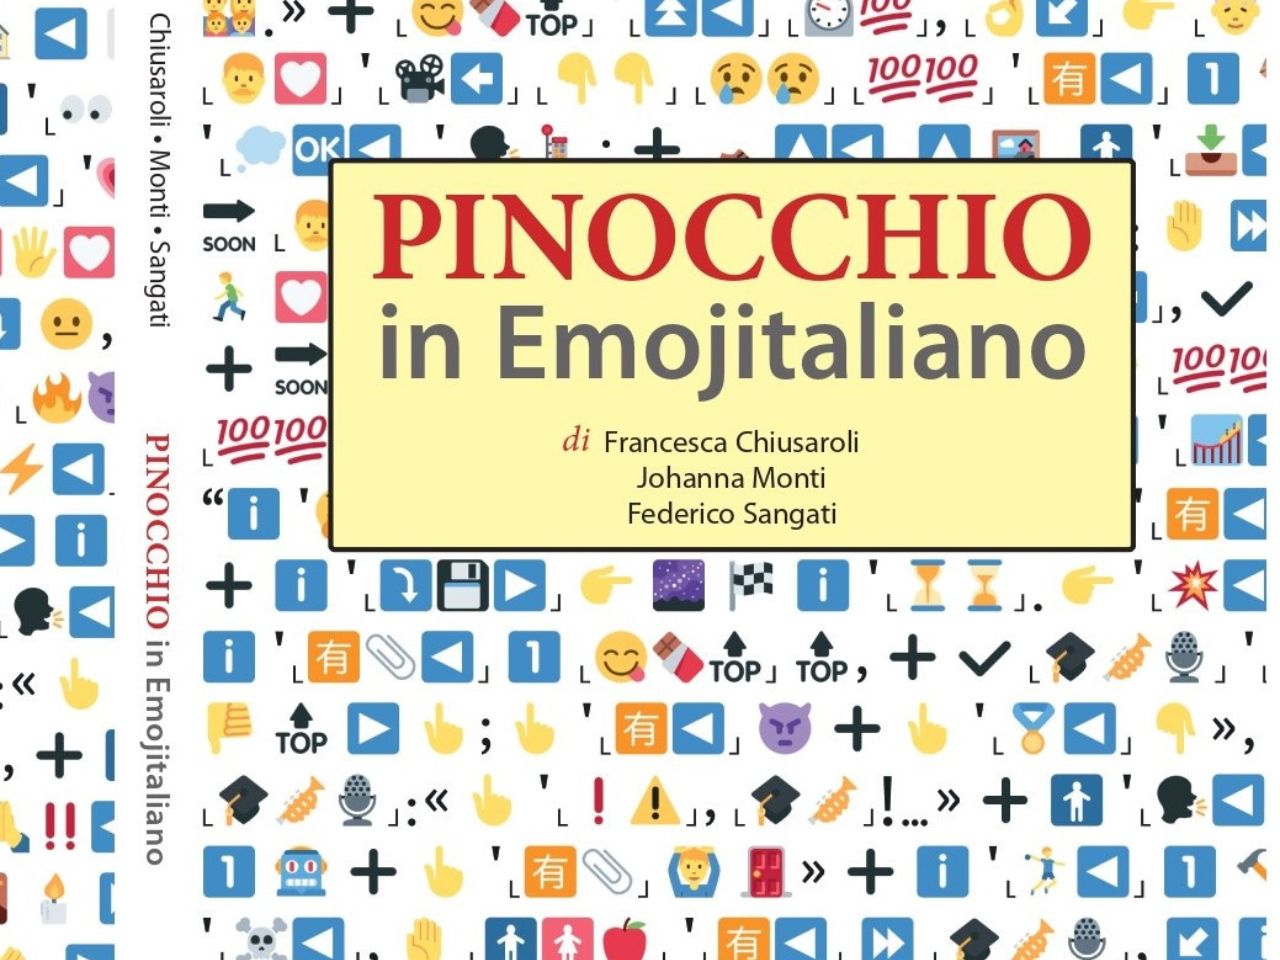 Giornata degli Emoji: cinque anni fa a Macerata nasceva Pinocchio in emojitaliano